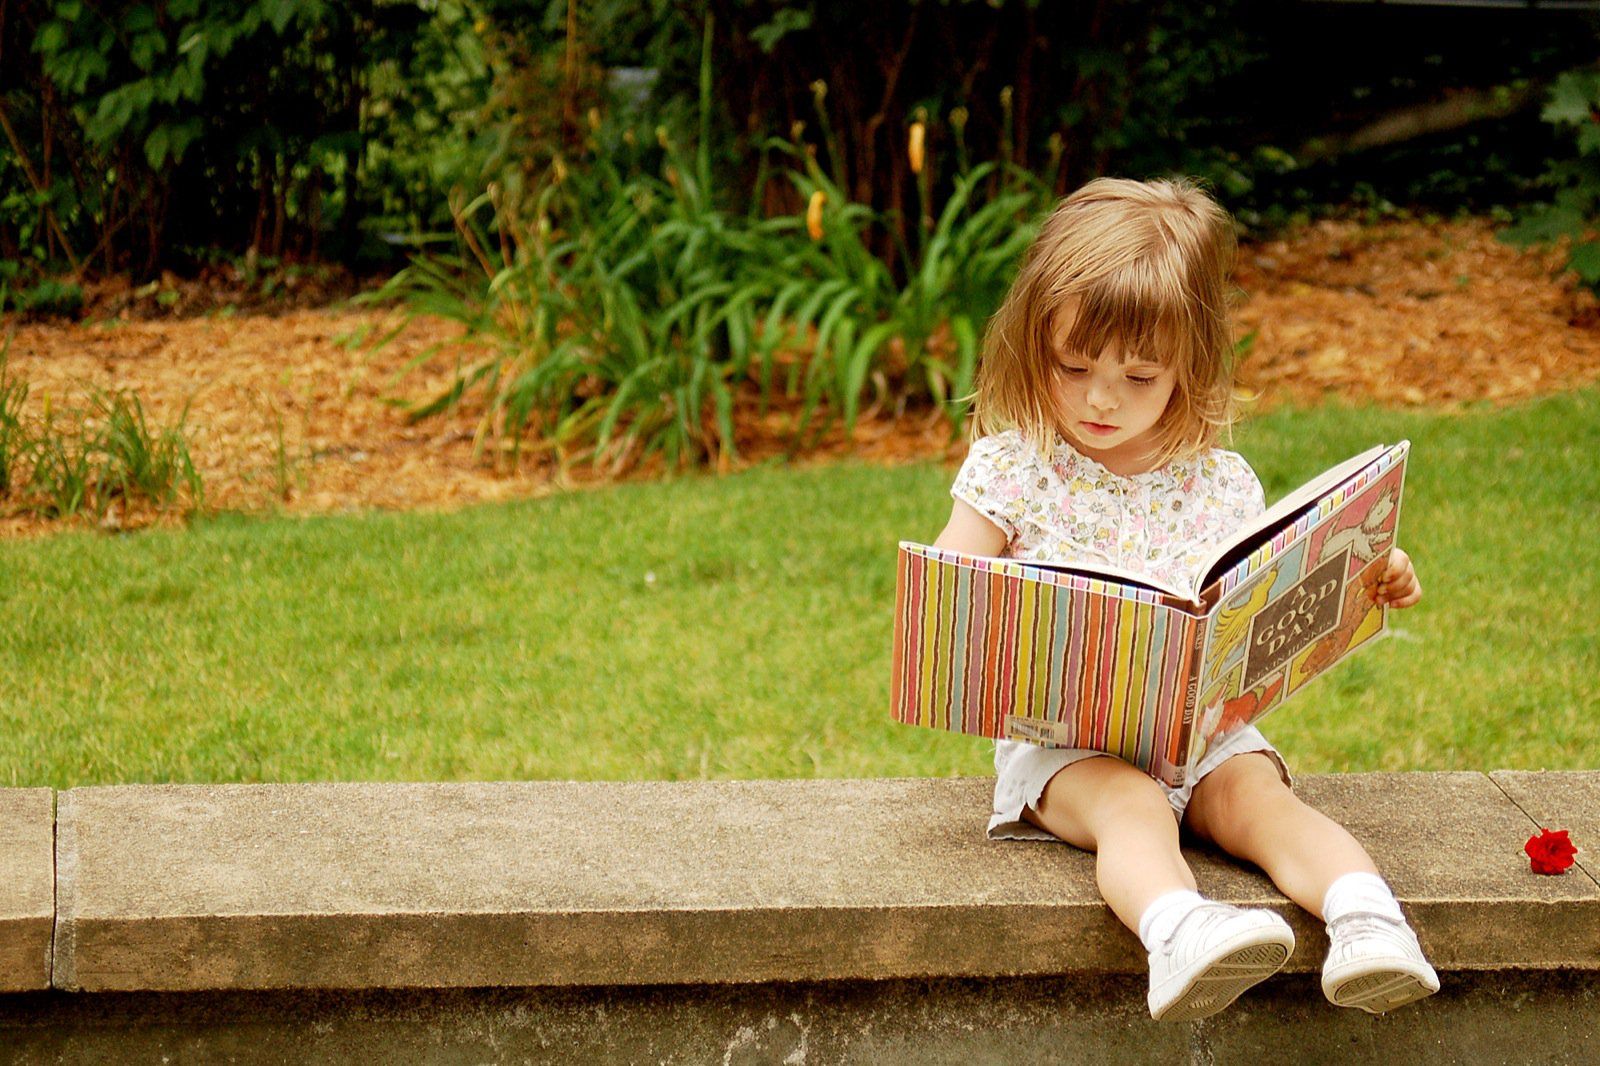 I read a book per month. Дети читают. Книги для детей. Книга для девочек. Девочка с книжкой.